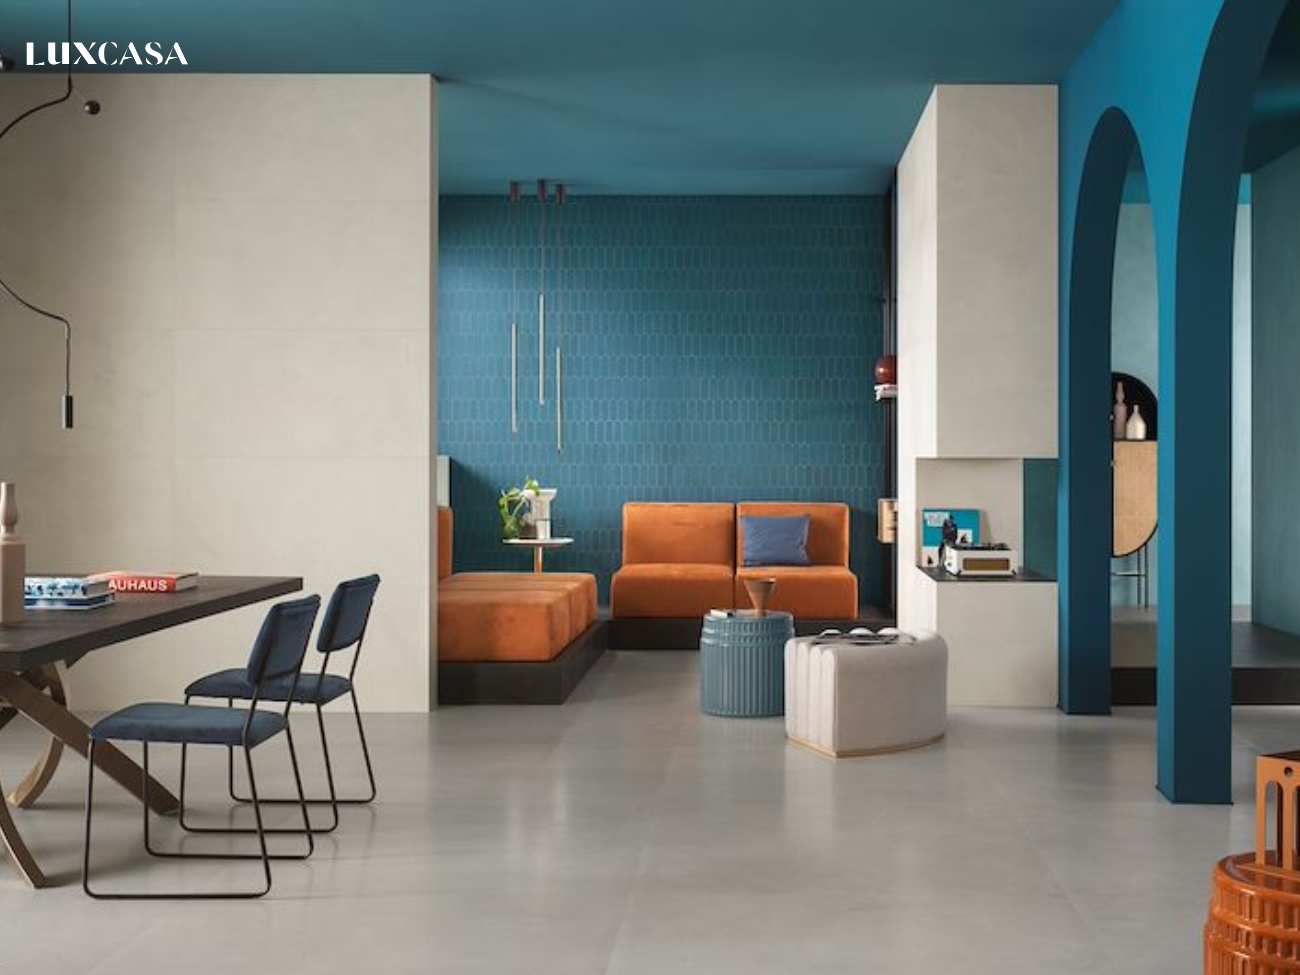 Gạch ốp tường màu xanh kết hợp với tông cam đem lại không gian sáng tạo